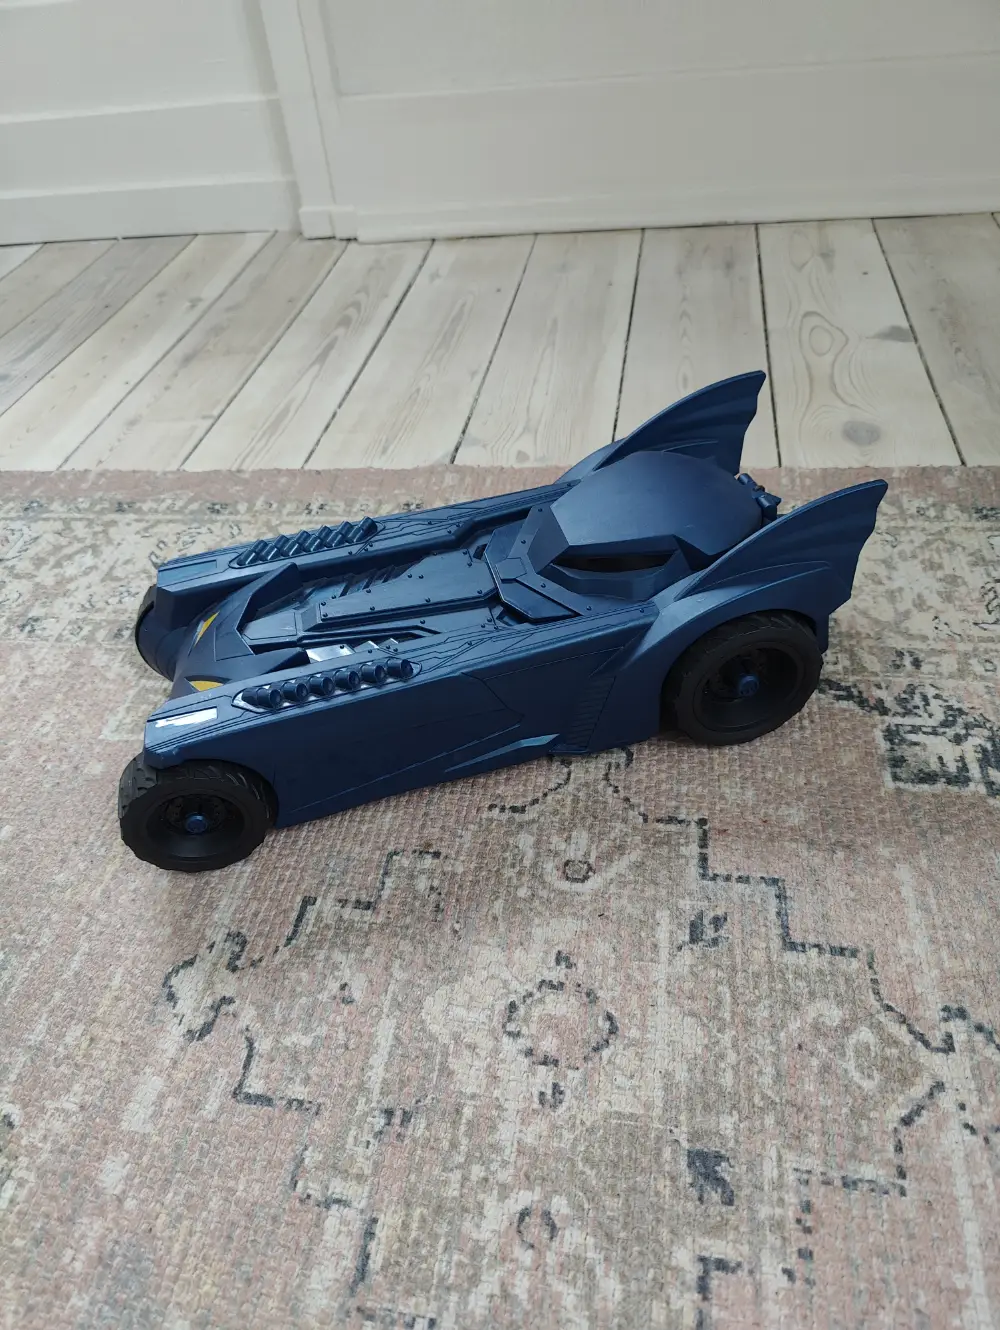 Batman Batmanbil